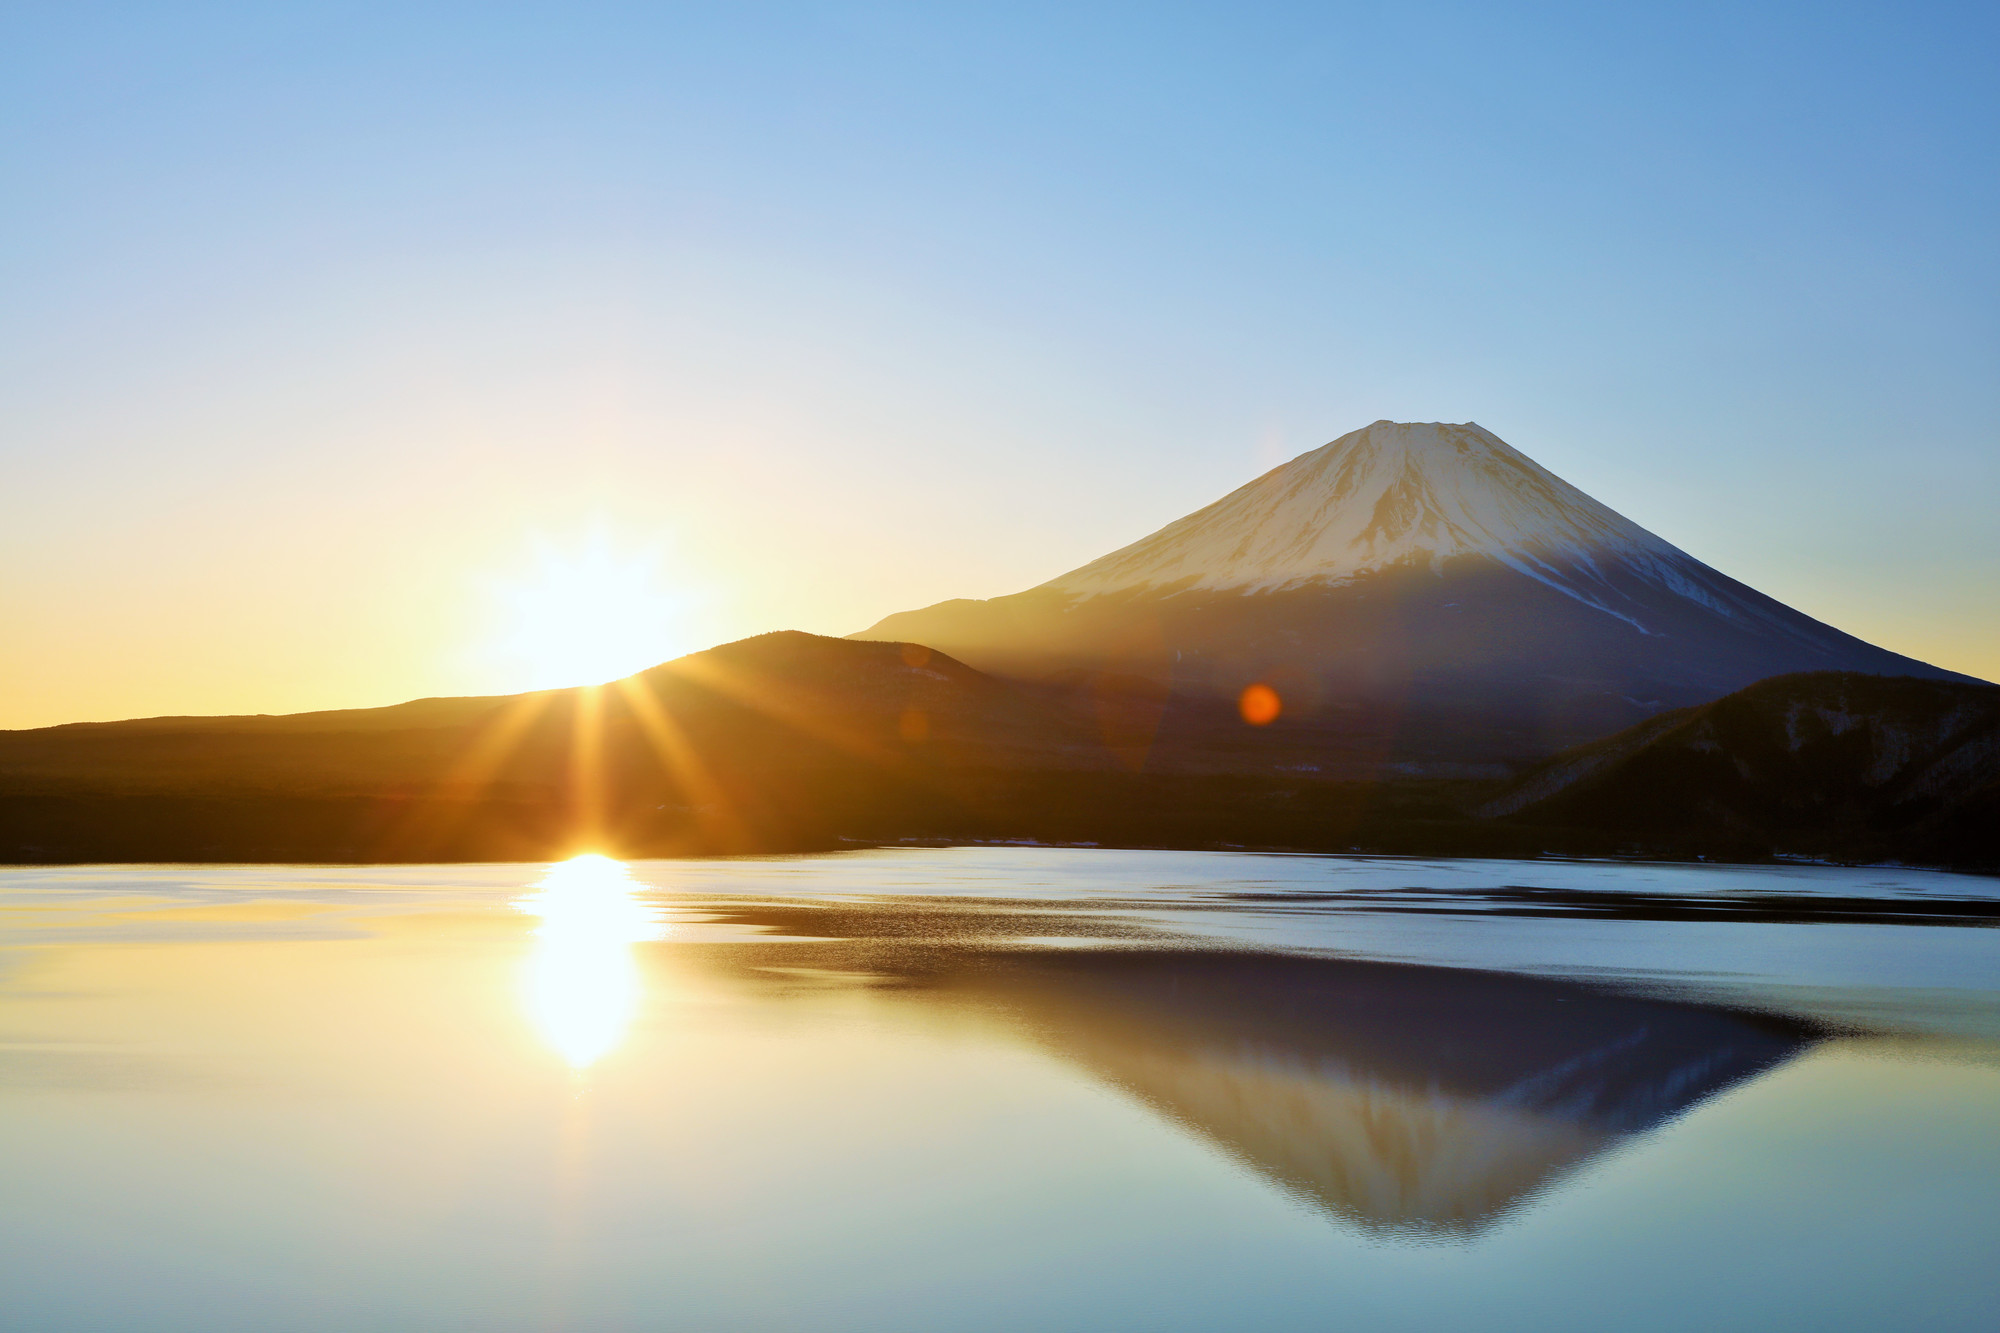 富士山からの日の出